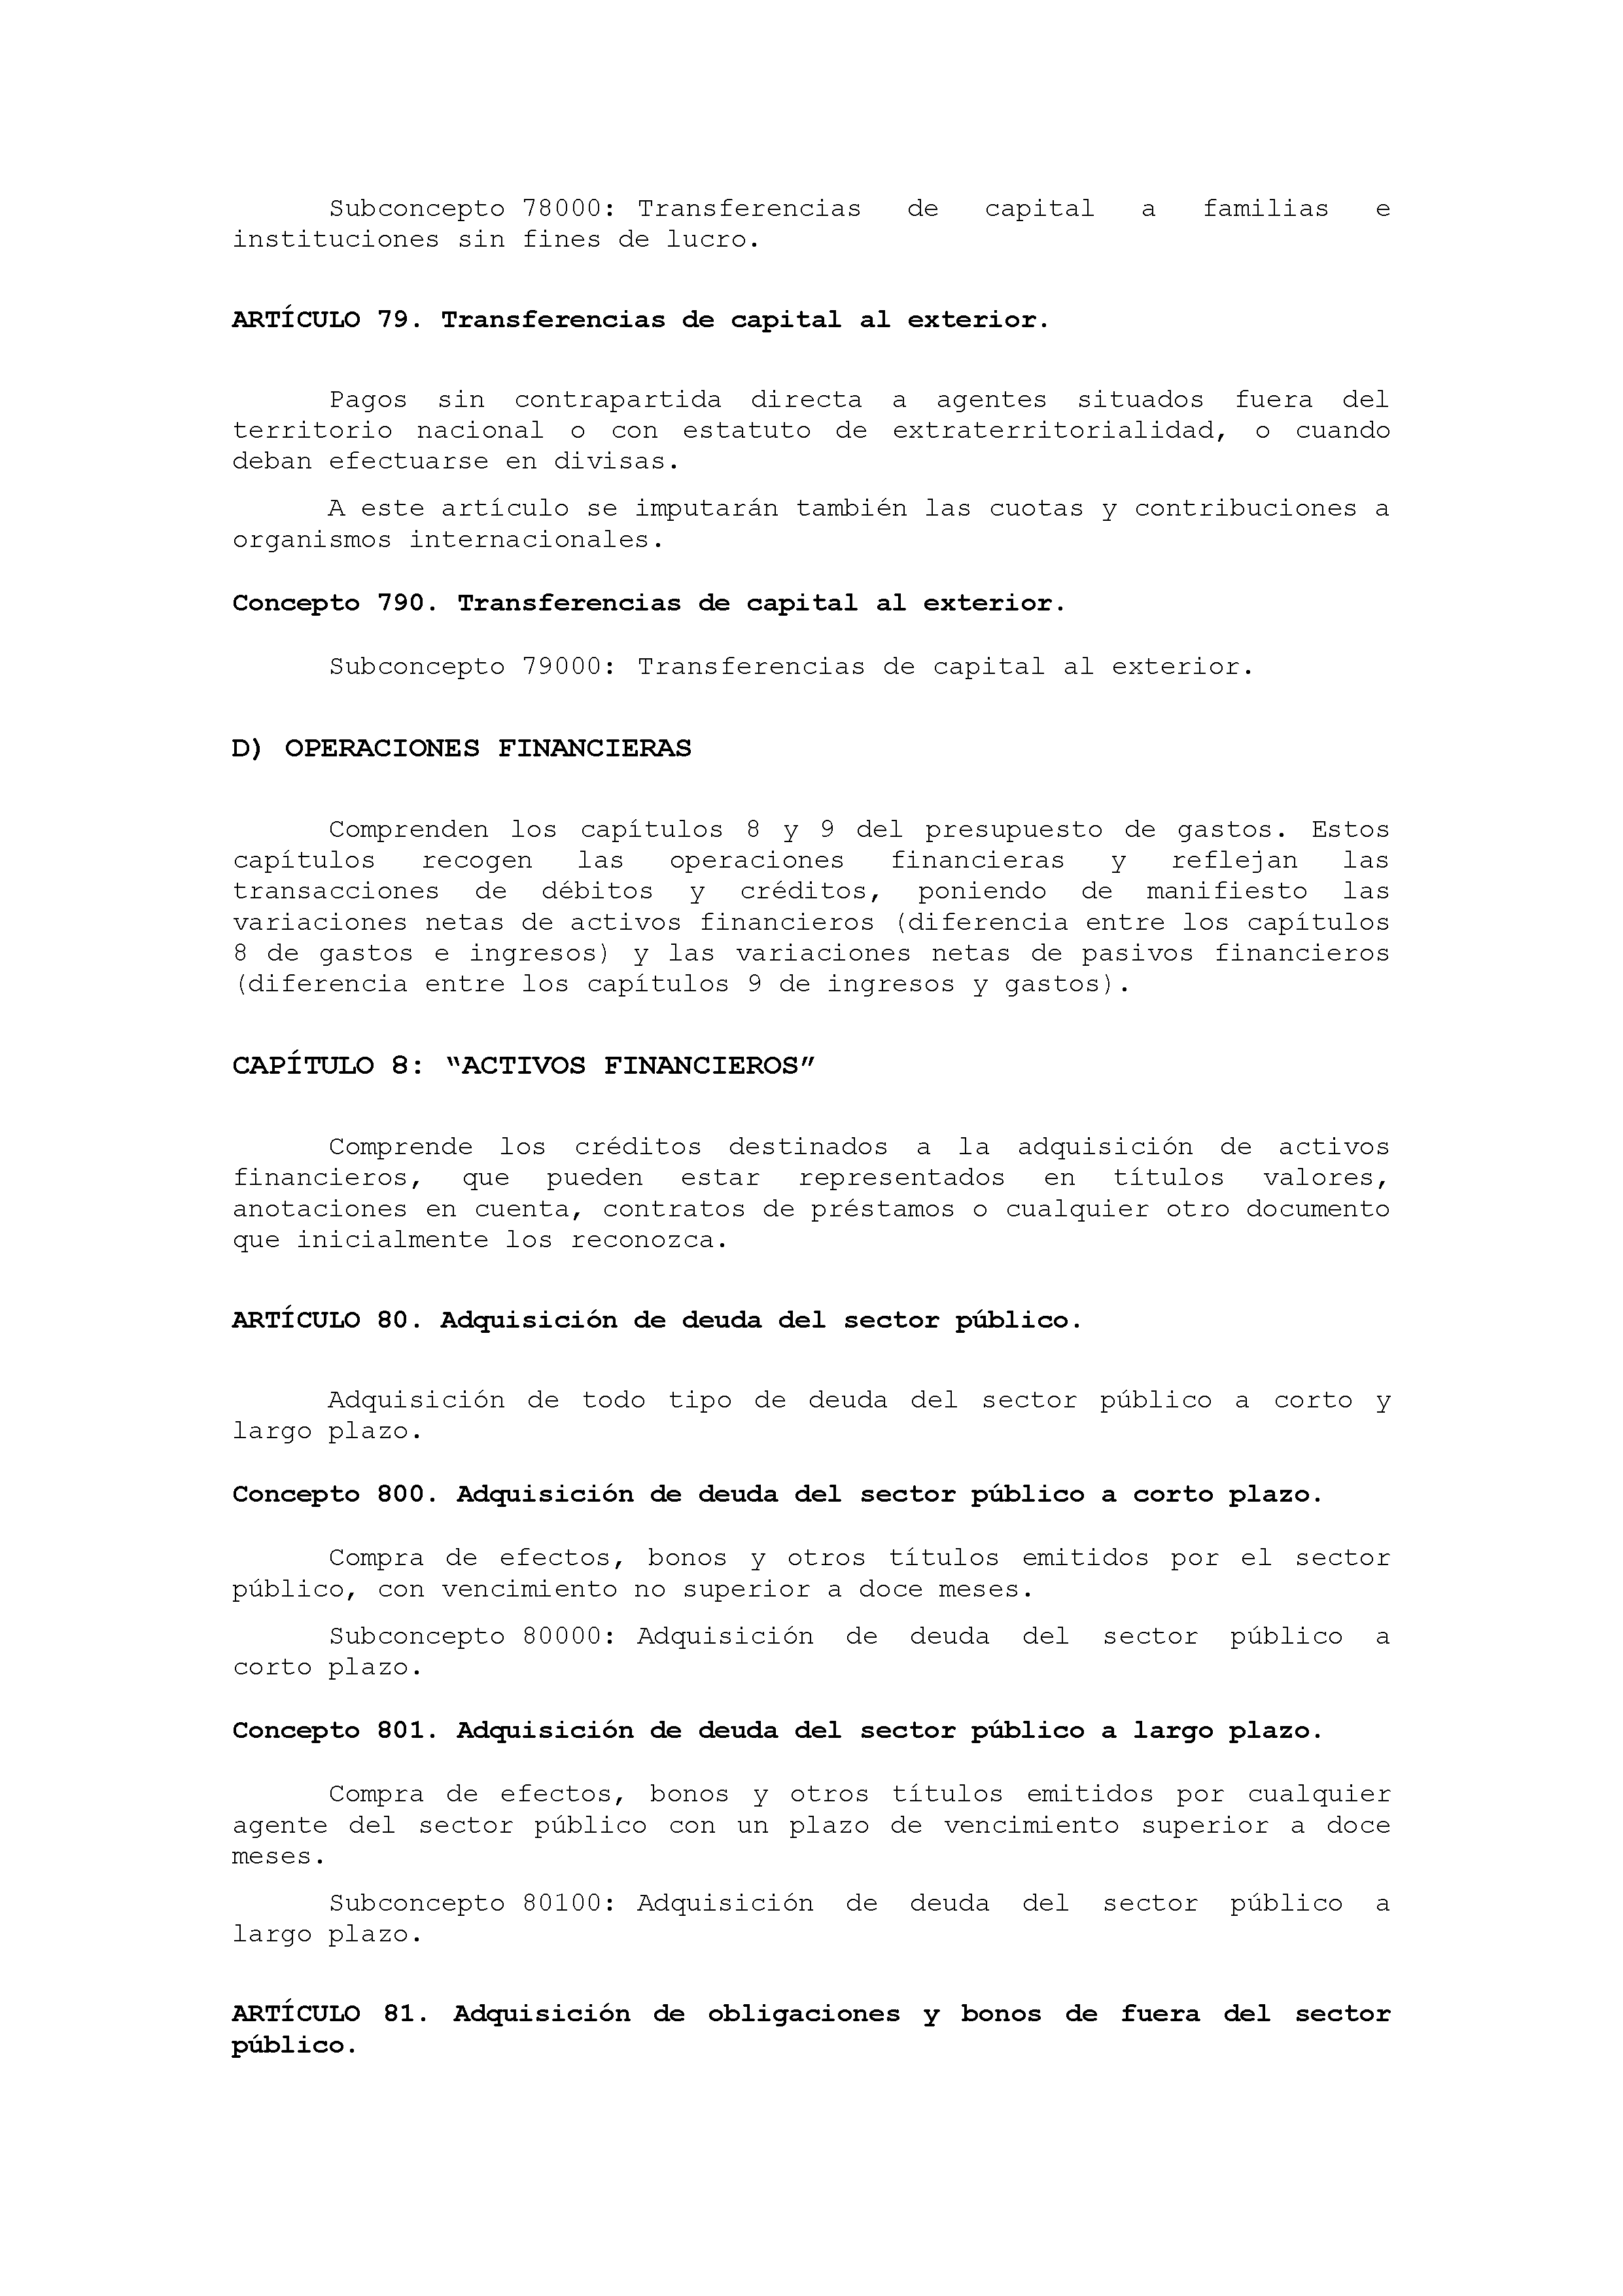 ANEXO IX CÓDIGO DE LA CLASIFICACIÓN ECONÓMICA DE LOS GASTOS PÚBLICOS Pag 43